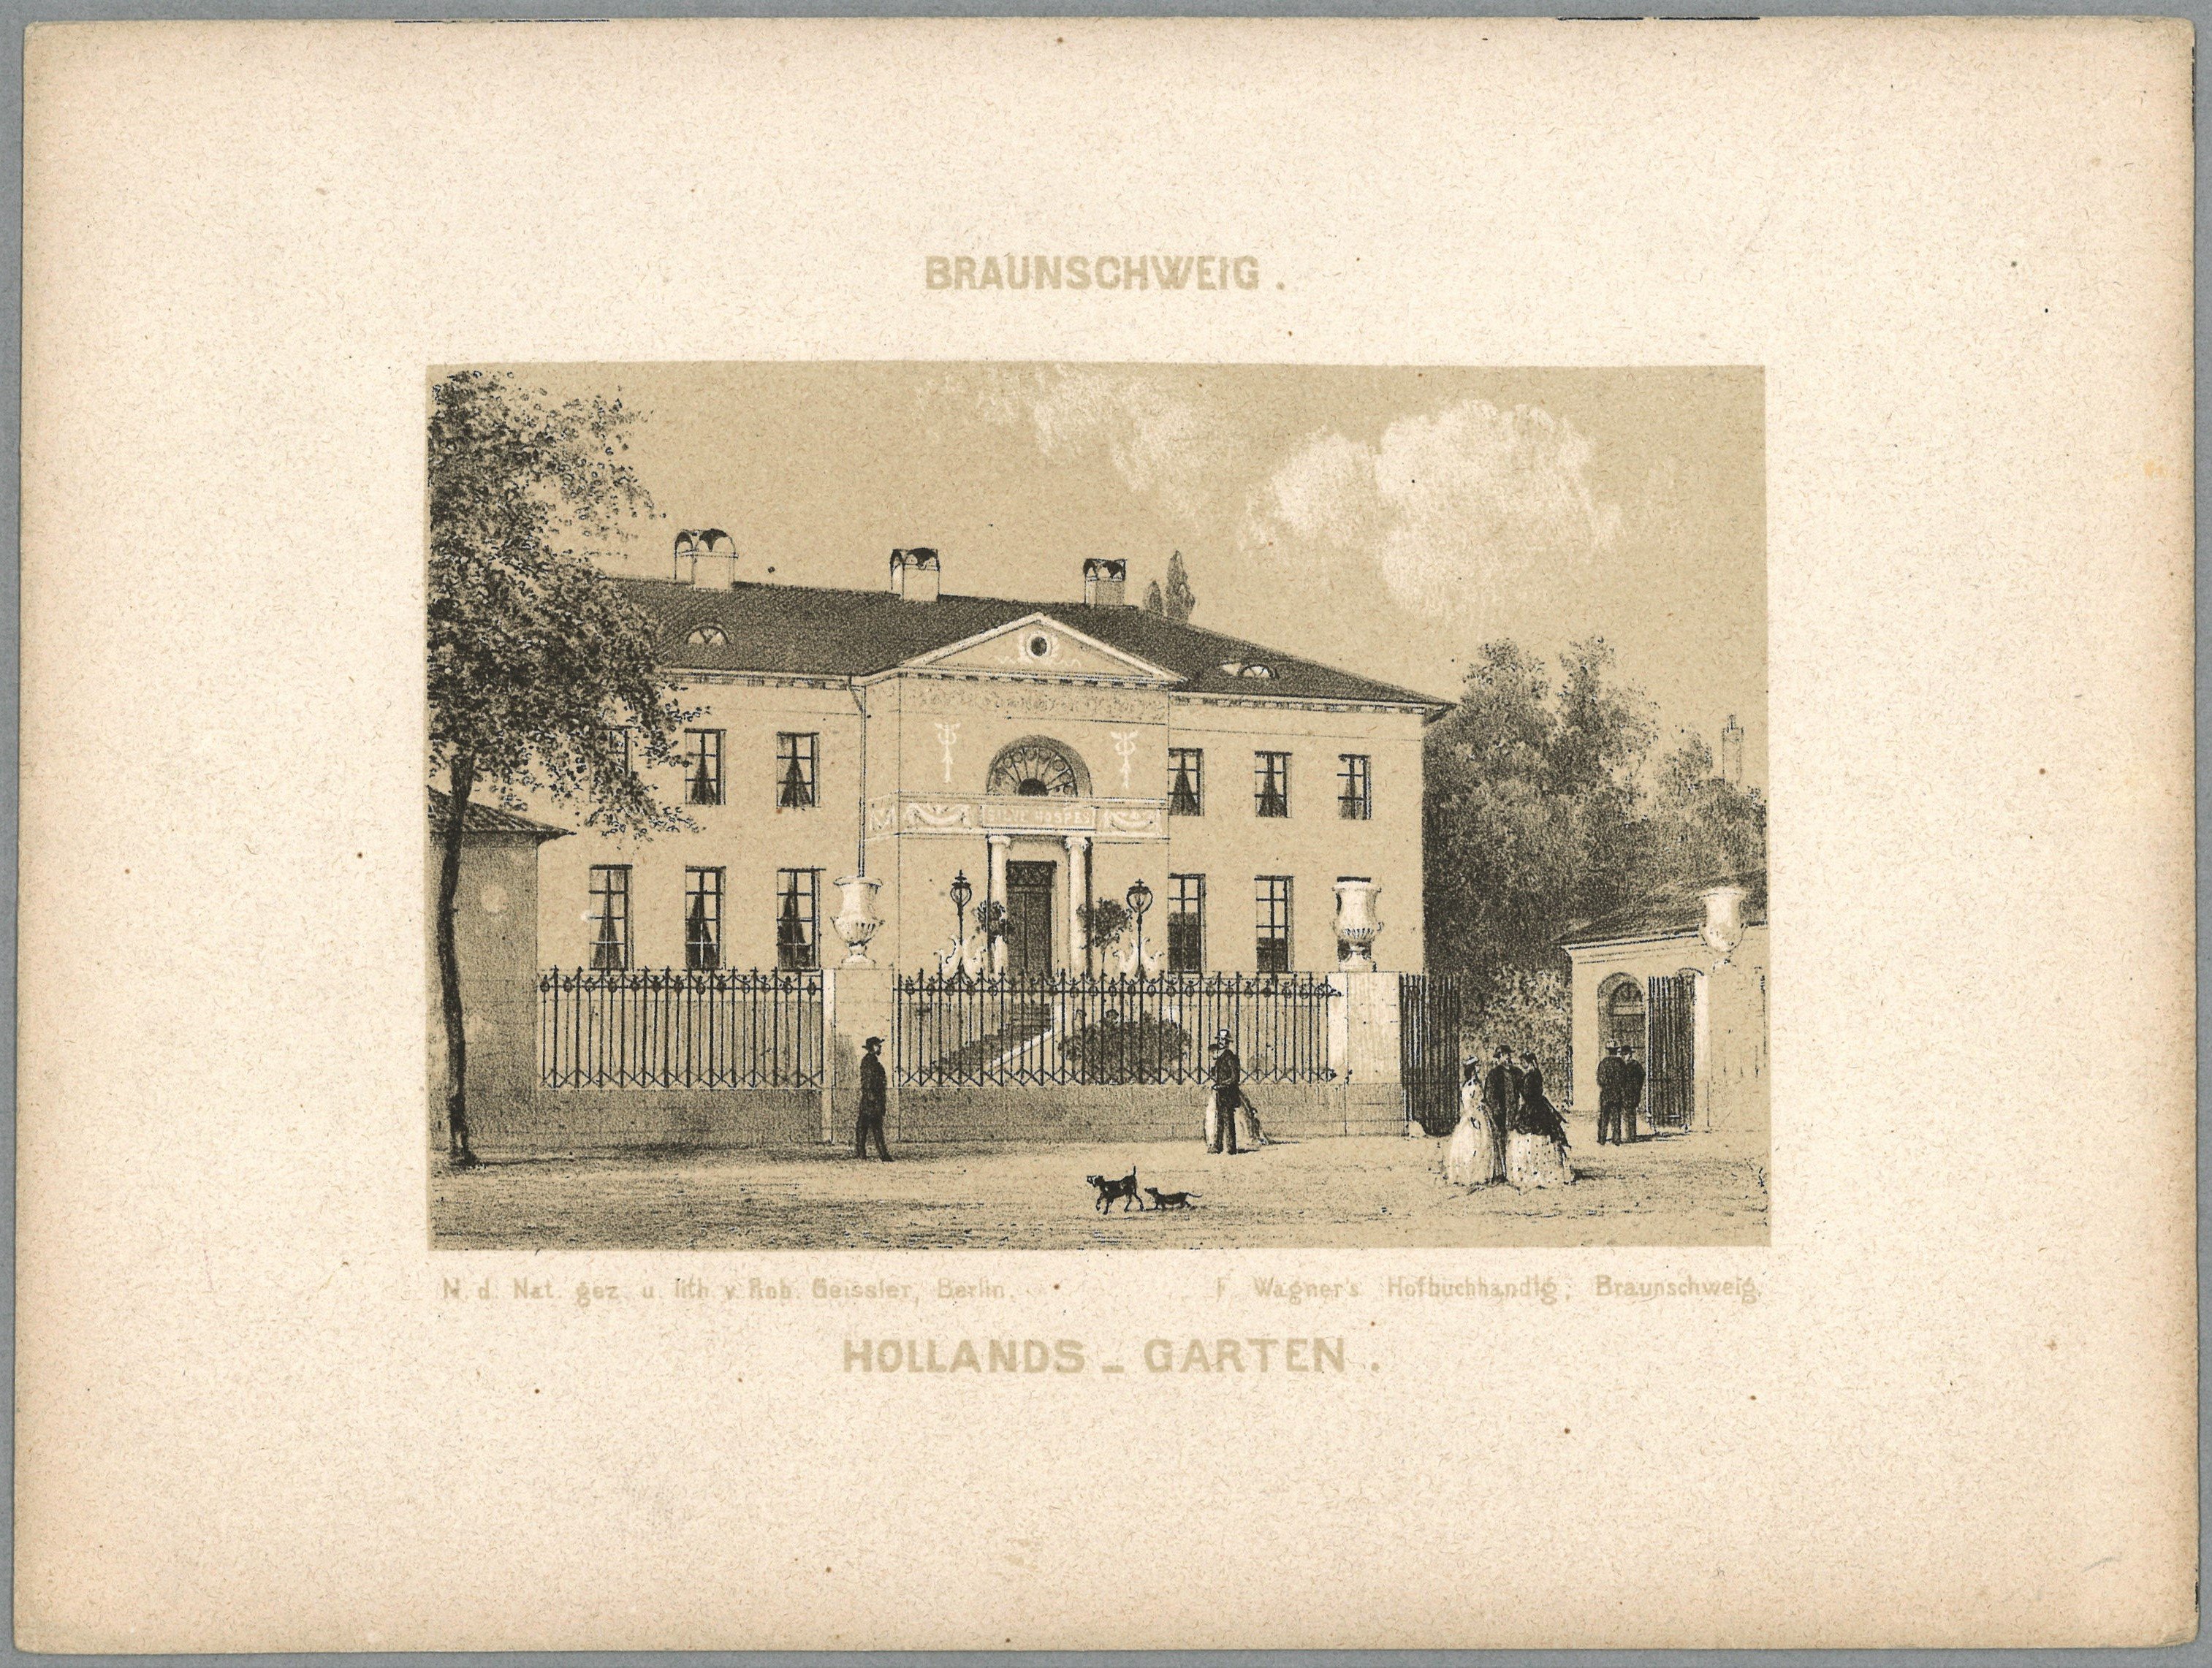 Braunschweig, Lessingplatz: Villa Salve Hospes im Hollandtsgarten (Landesgeschichtliche Vereinigung für die Mark Brandenburg e.V., Archiv CC BY)